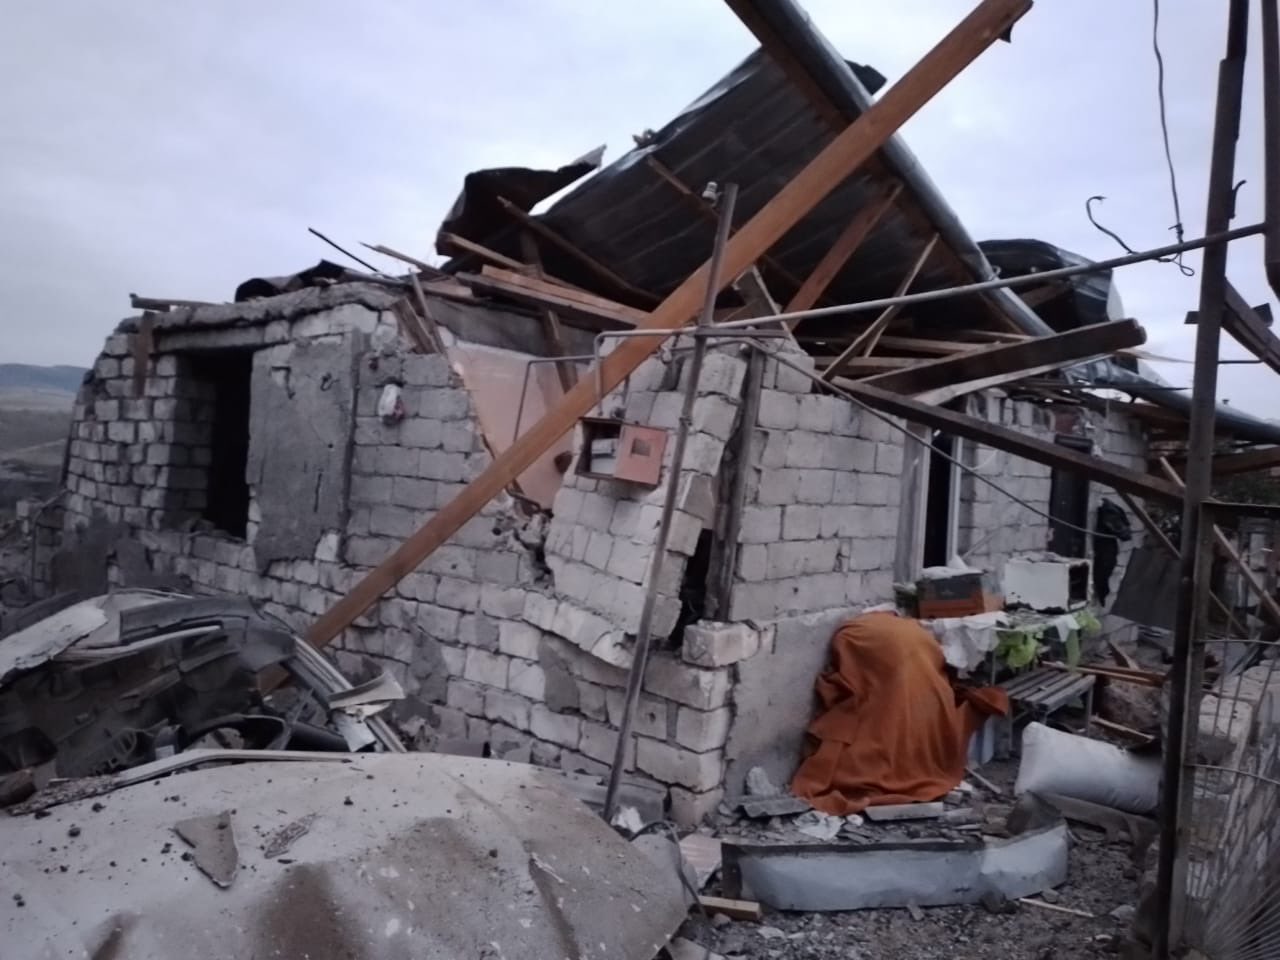 Ասկերանի շրջանի Բերքաձորում գտնվող այս բնակելի տները ադրբեջանական զինուժի կողմից թիրախավորվել և ավերվել են հարձակման ժամանակ․Արցախի ՄԻՊ